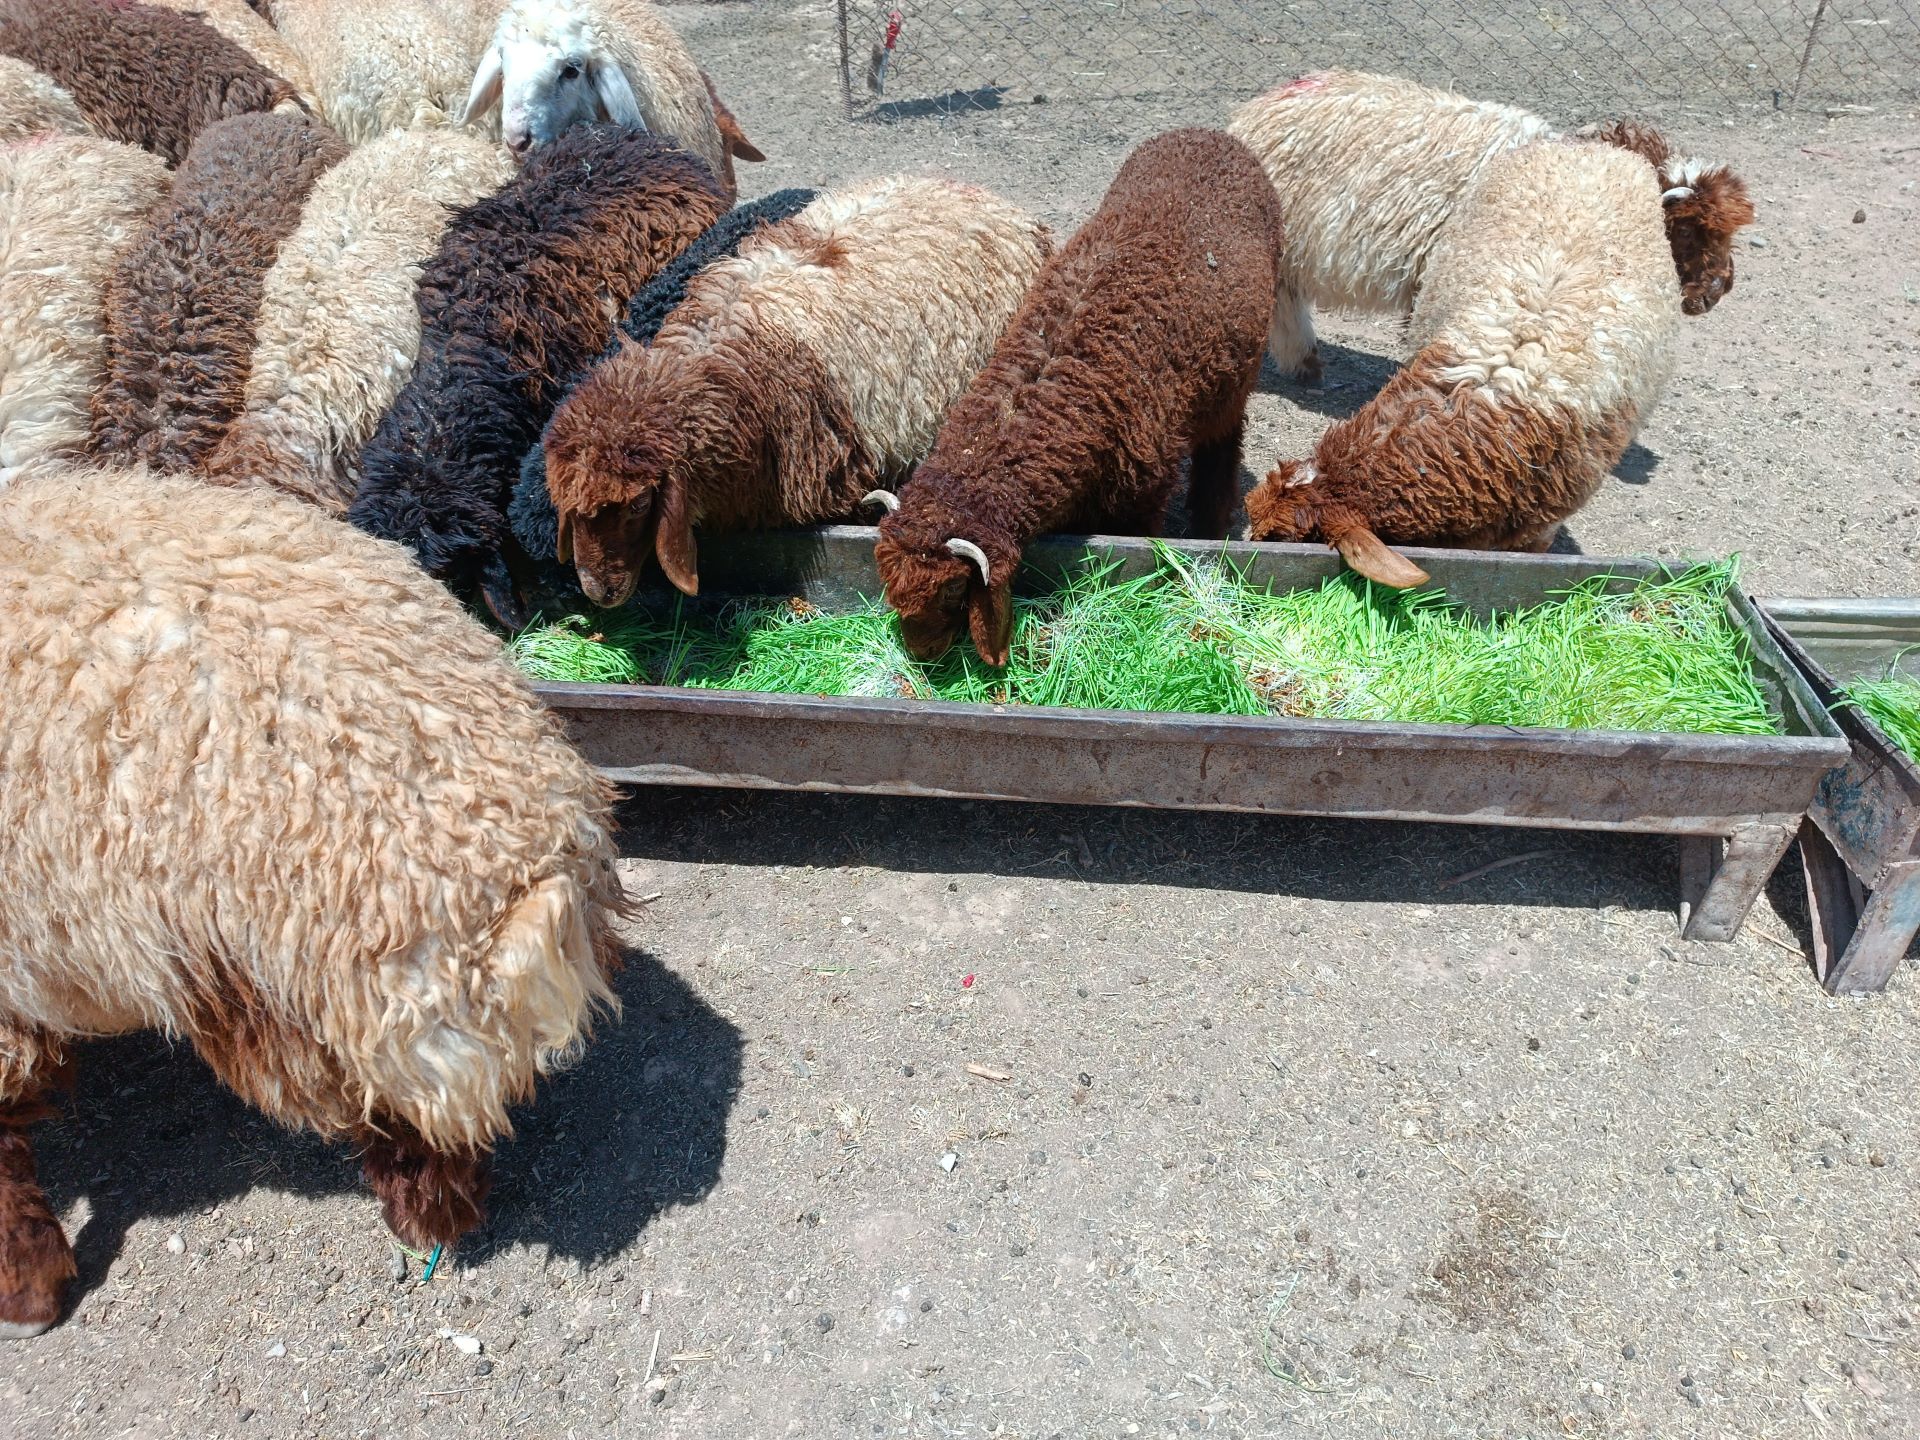 Das Bild zeigt mehrere Schafe, die an einem Futtertrog stehen, der mit hydroponisch angebautem Tierfutter gefüllt ist.